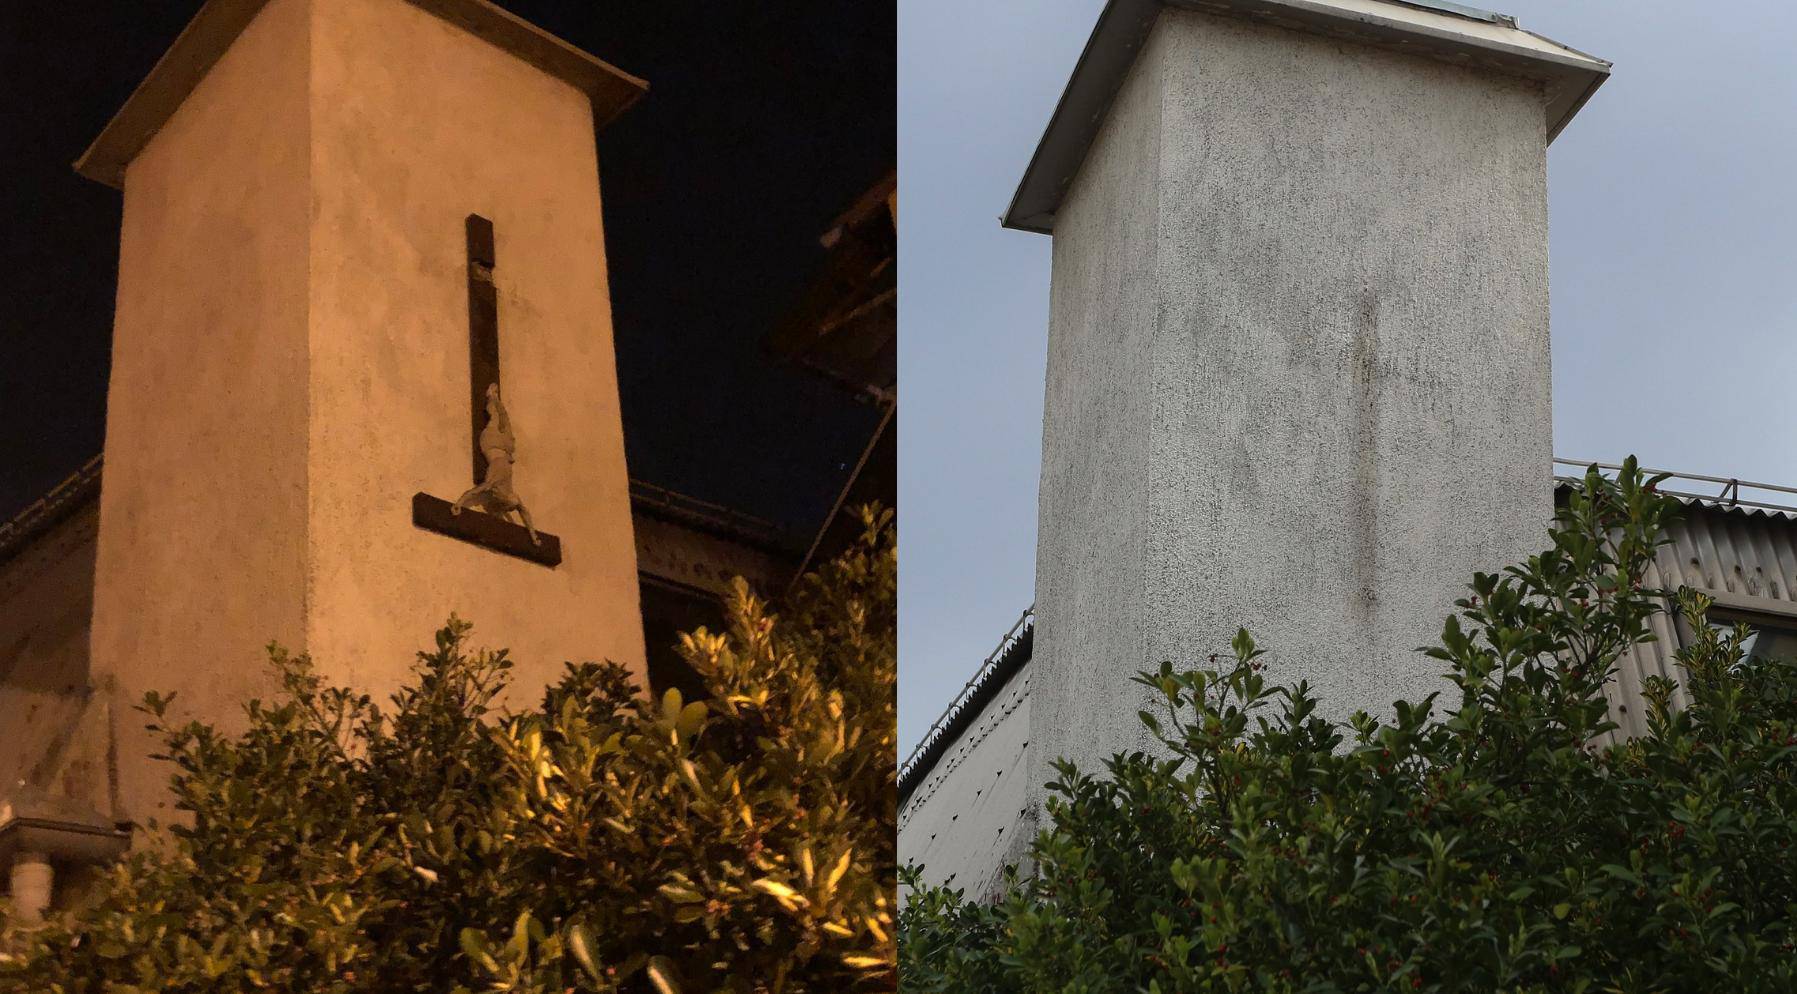 Na nekadašnjoj crkvi okrenuo se križ: 'Mi sada živimo tu'